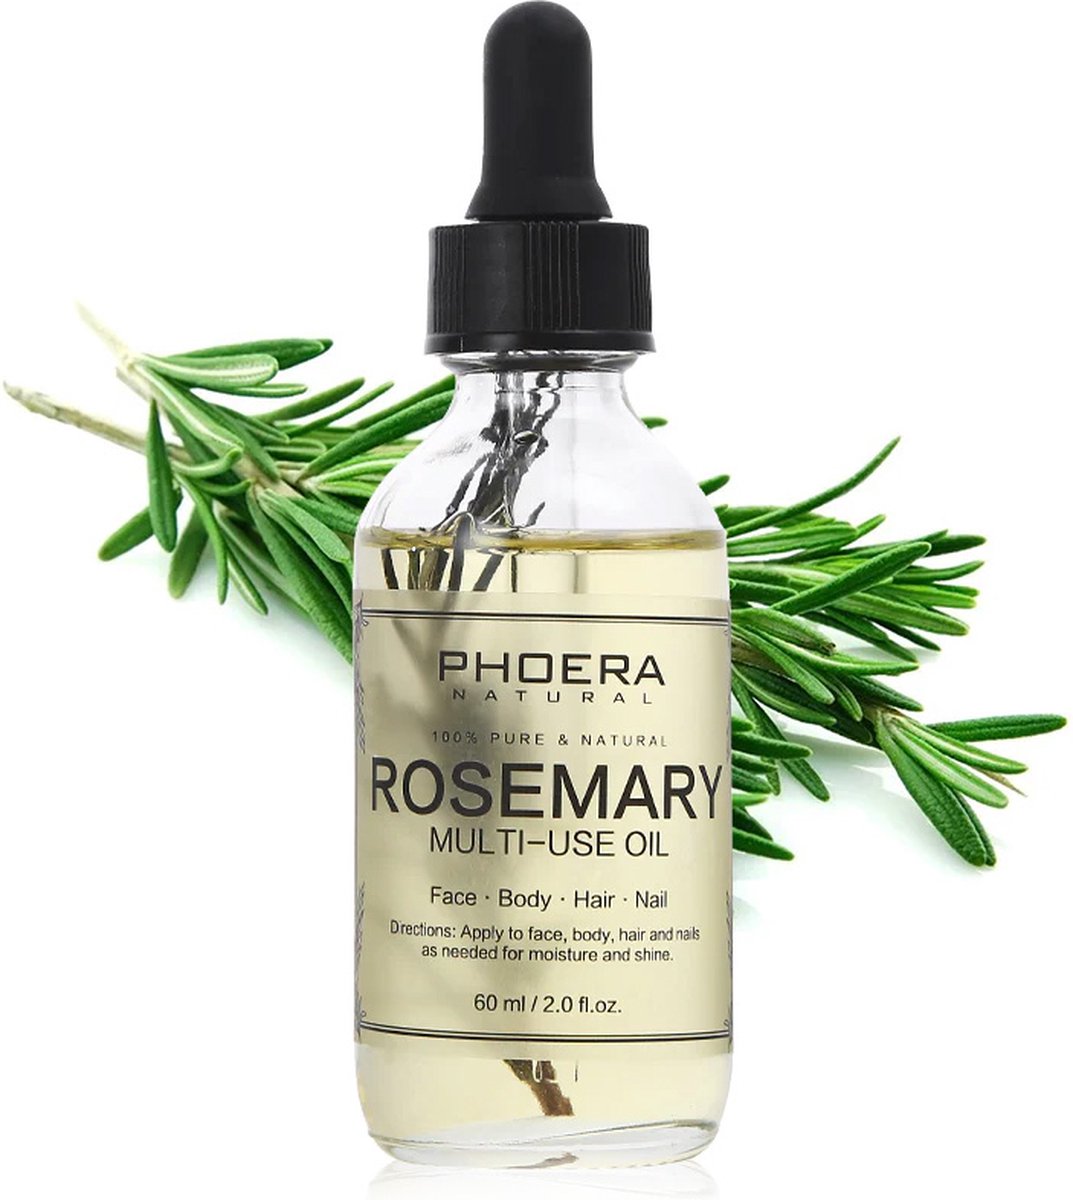 PHOERA™ Rosemary Hair Oil - Multi use Face, Body, Hair, Skin - Voor in het haar - 100% Rosemarijn Olie - 60ml pipet fles